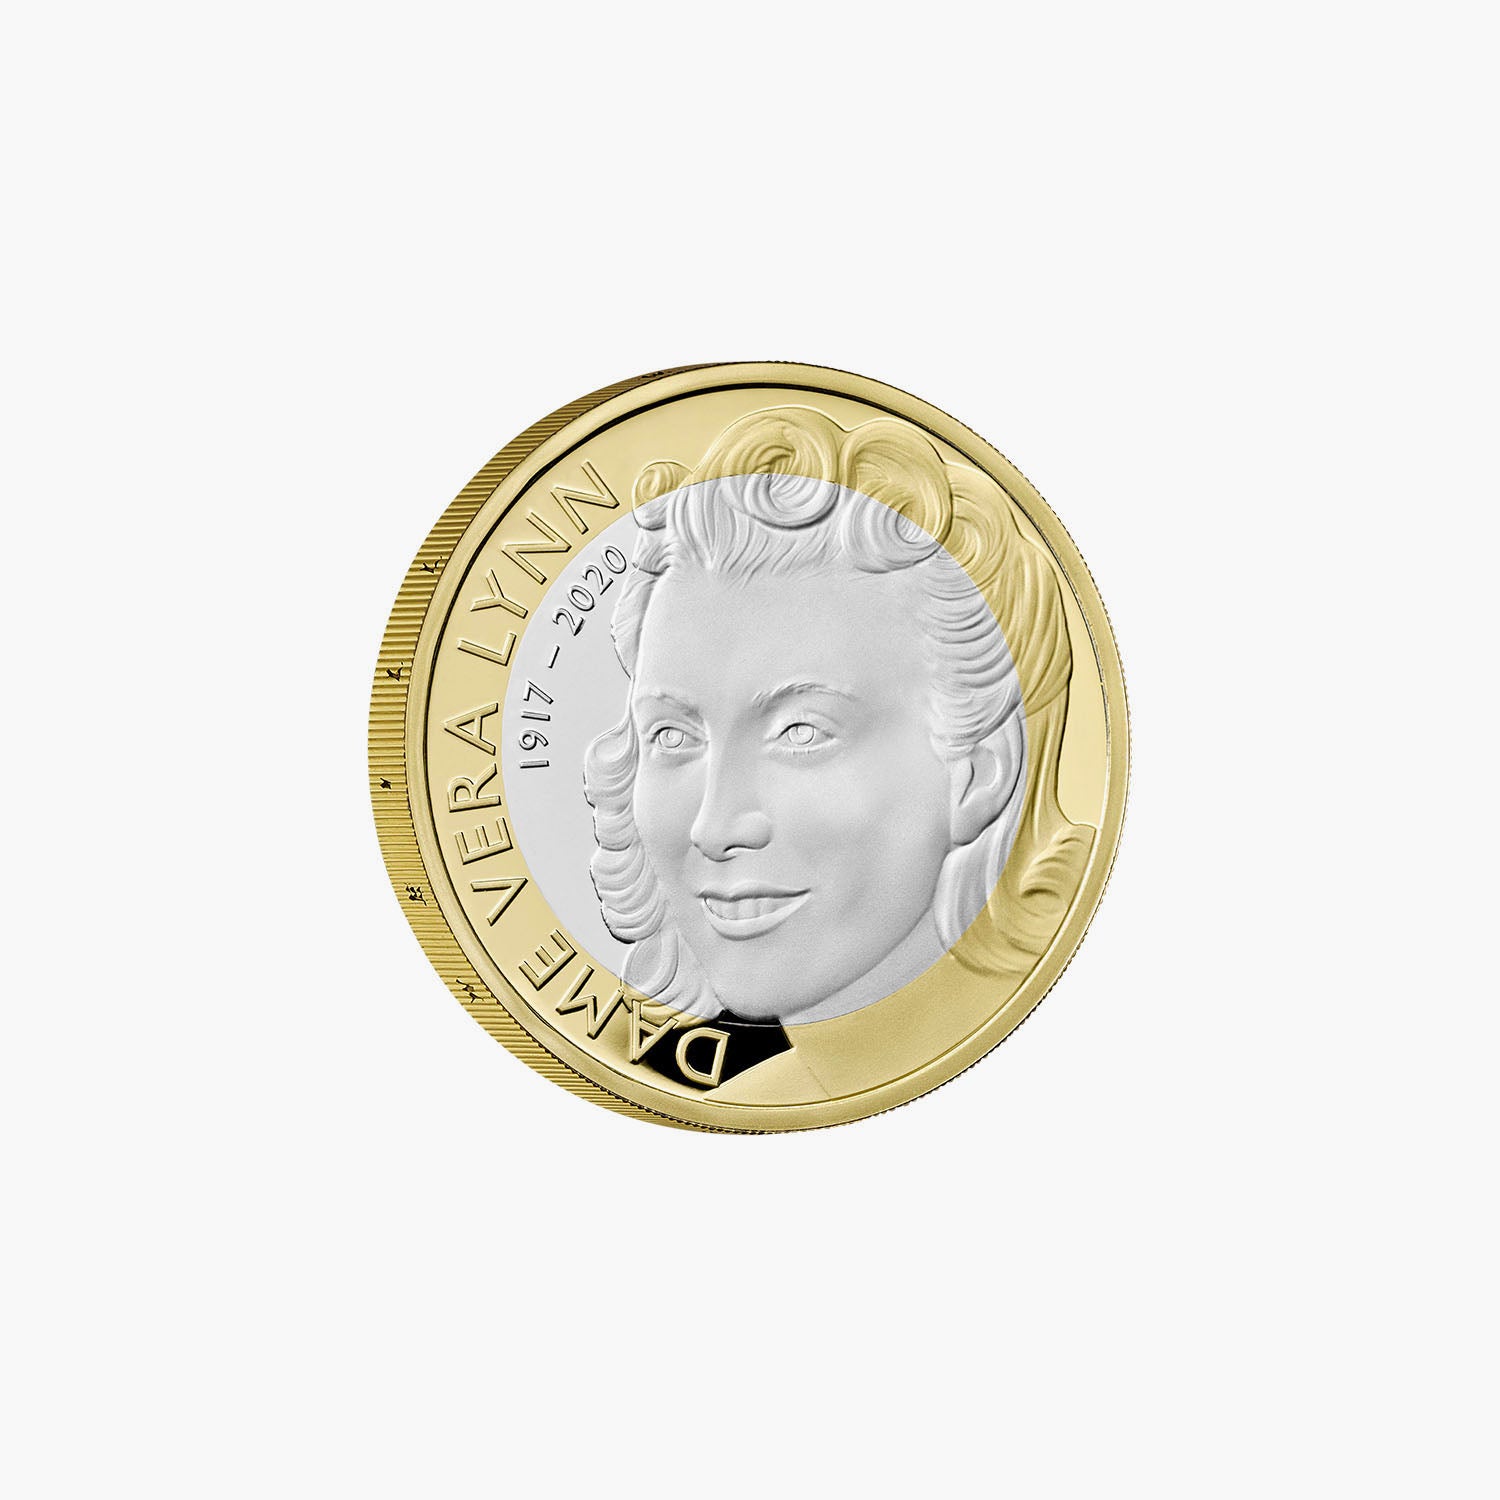 Célébration de la vie et de l'héritage de Dame Vera Lynn 2022 Pièce de 2 £ en argent épreuve numismatique britannique